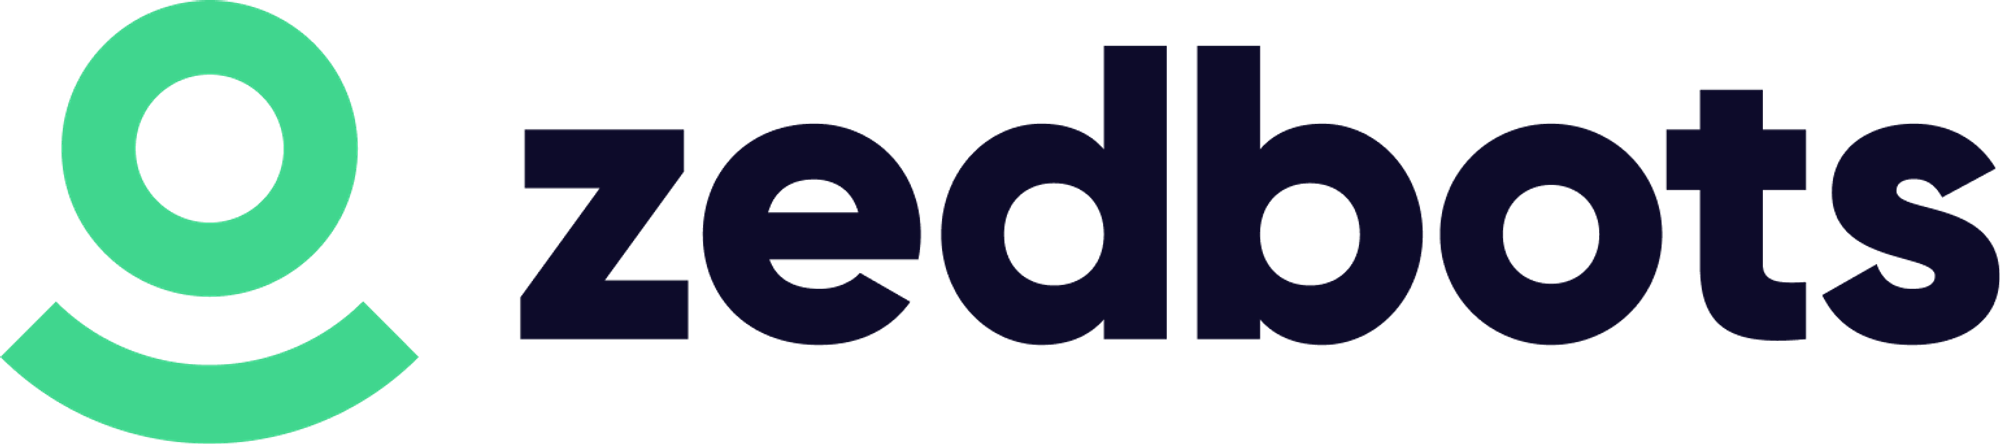 Modern logo design for zedbots.com